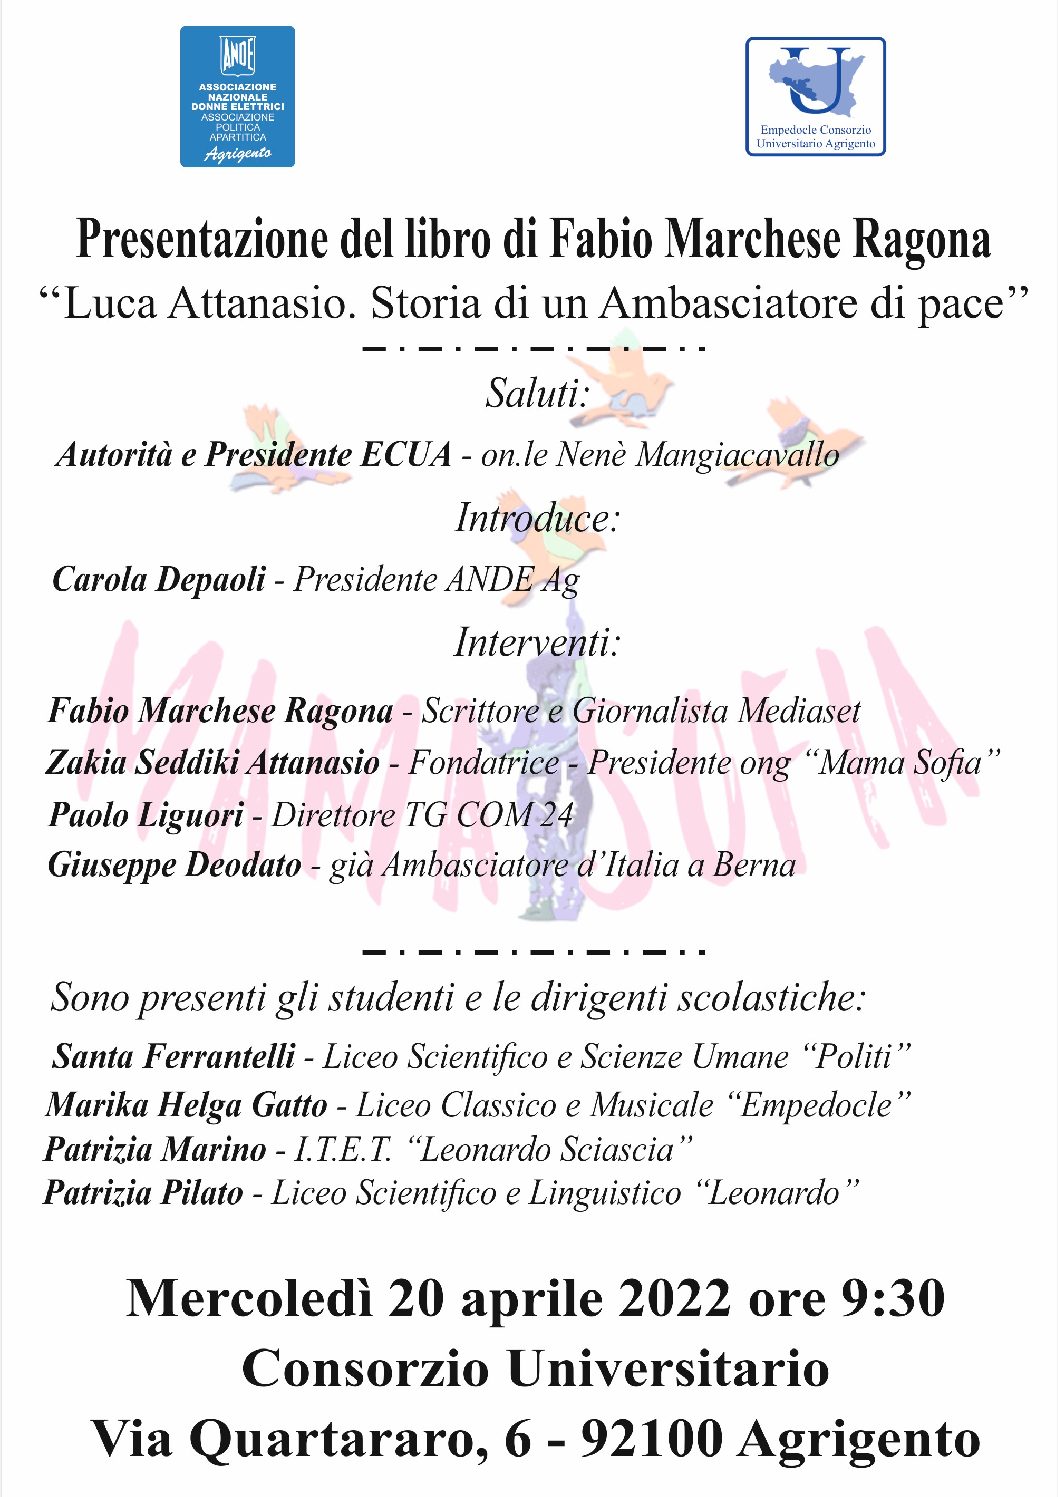 EVENTO: Presentazione Libro di Fabio Marchese Ragona